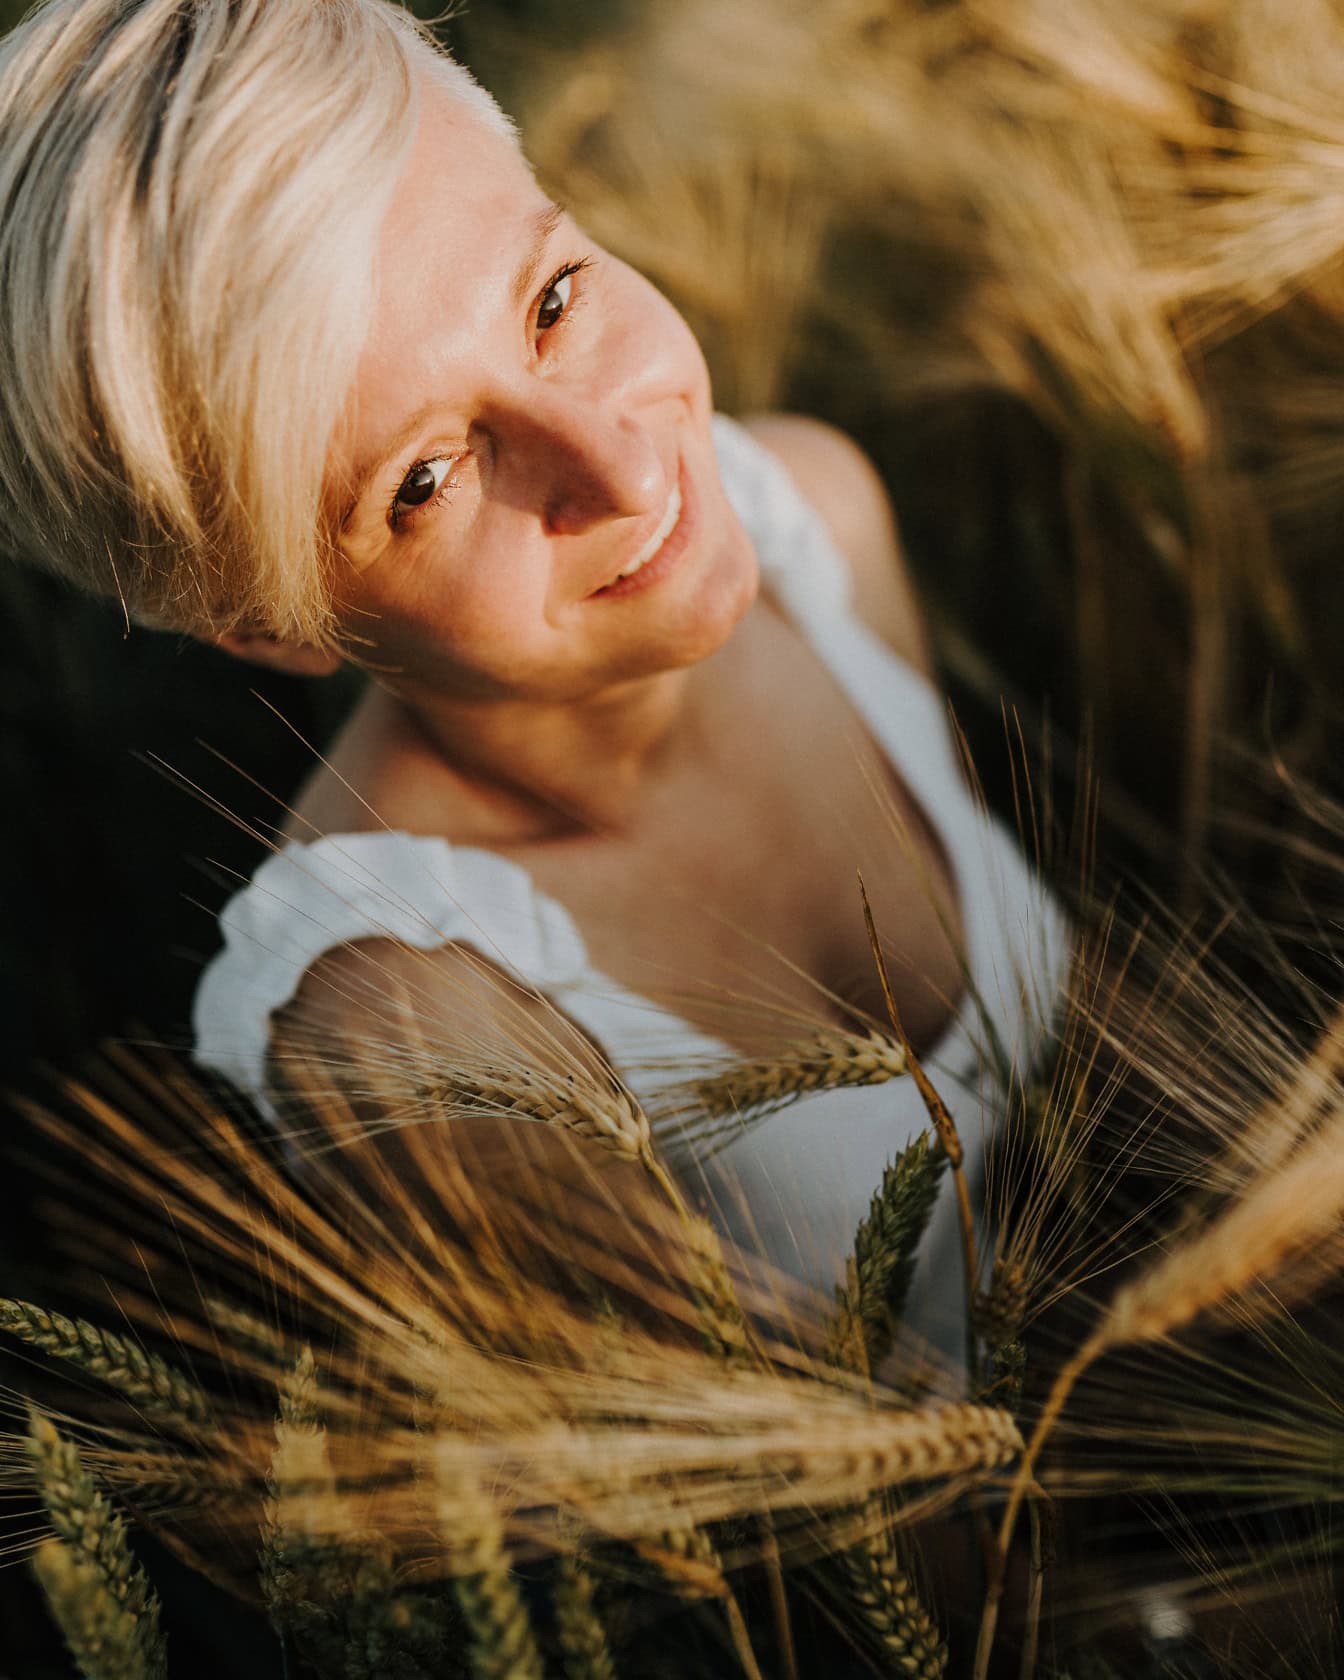 Nærbillede af en smilende blondine med kort hår, der poserer i en hvedemark